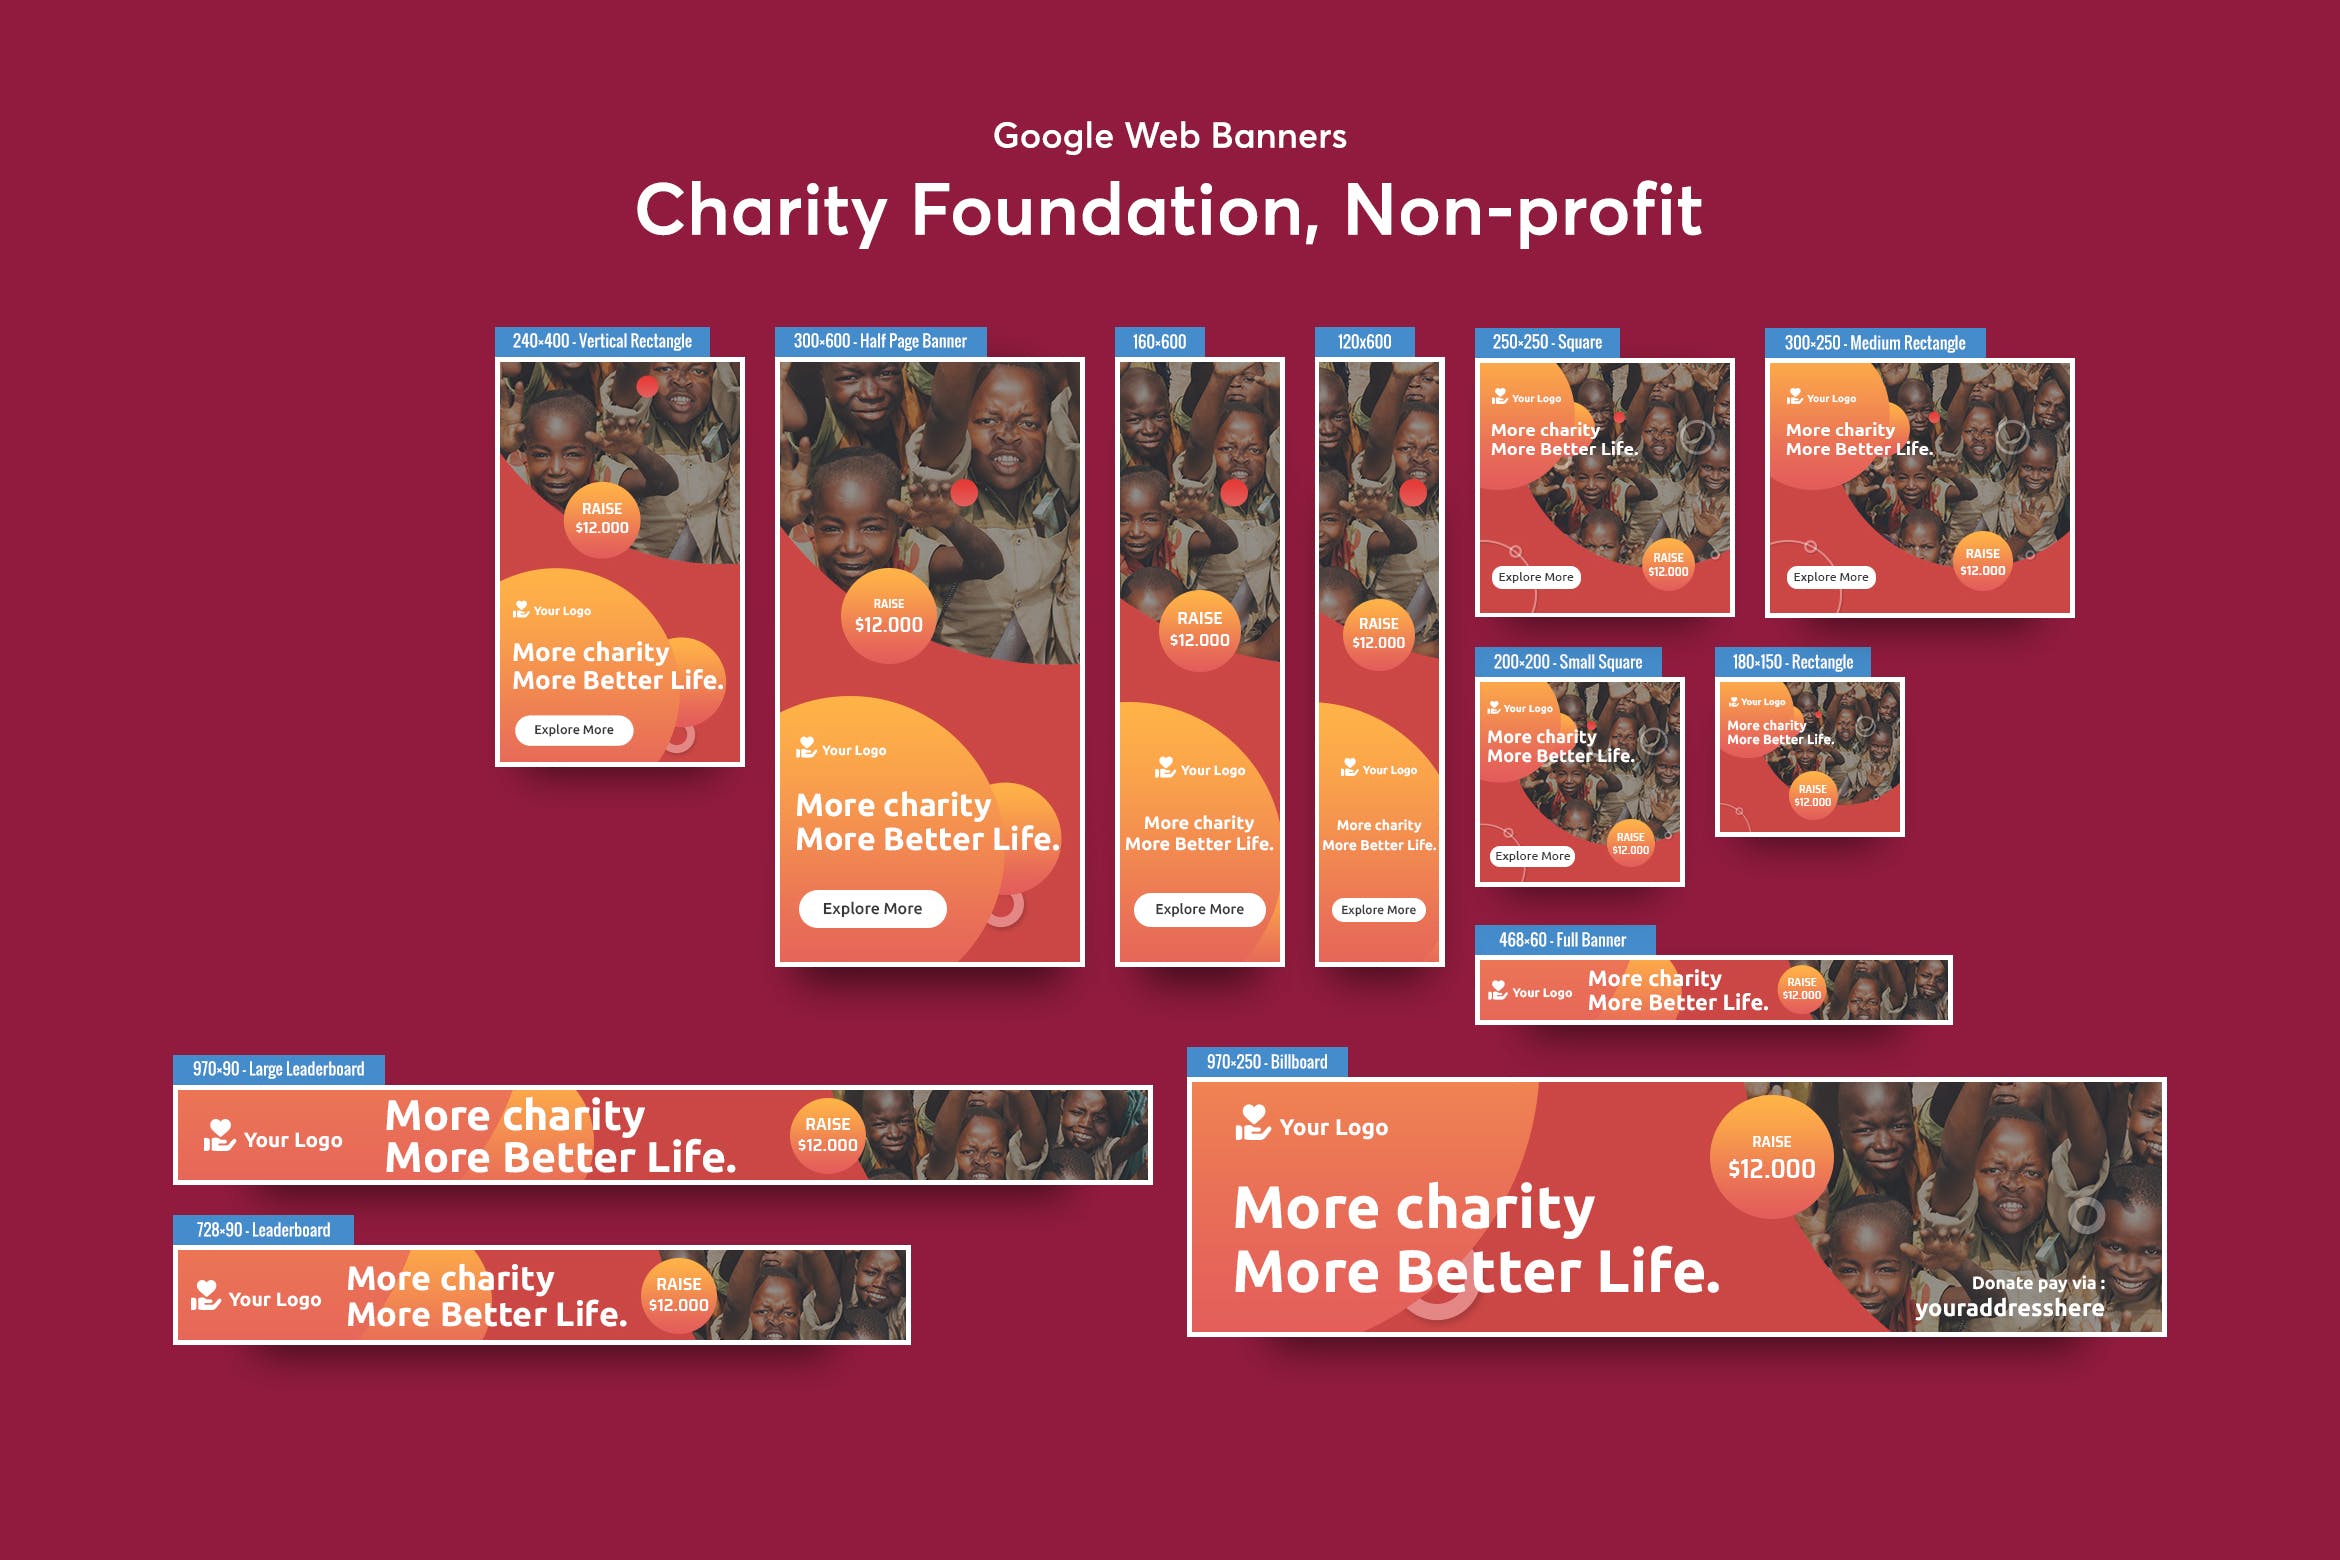 慈善基金会/非营利类型Banner横幅素材库精选广告模板v2 Charity Foundation, Non-profit Banners Ad插图